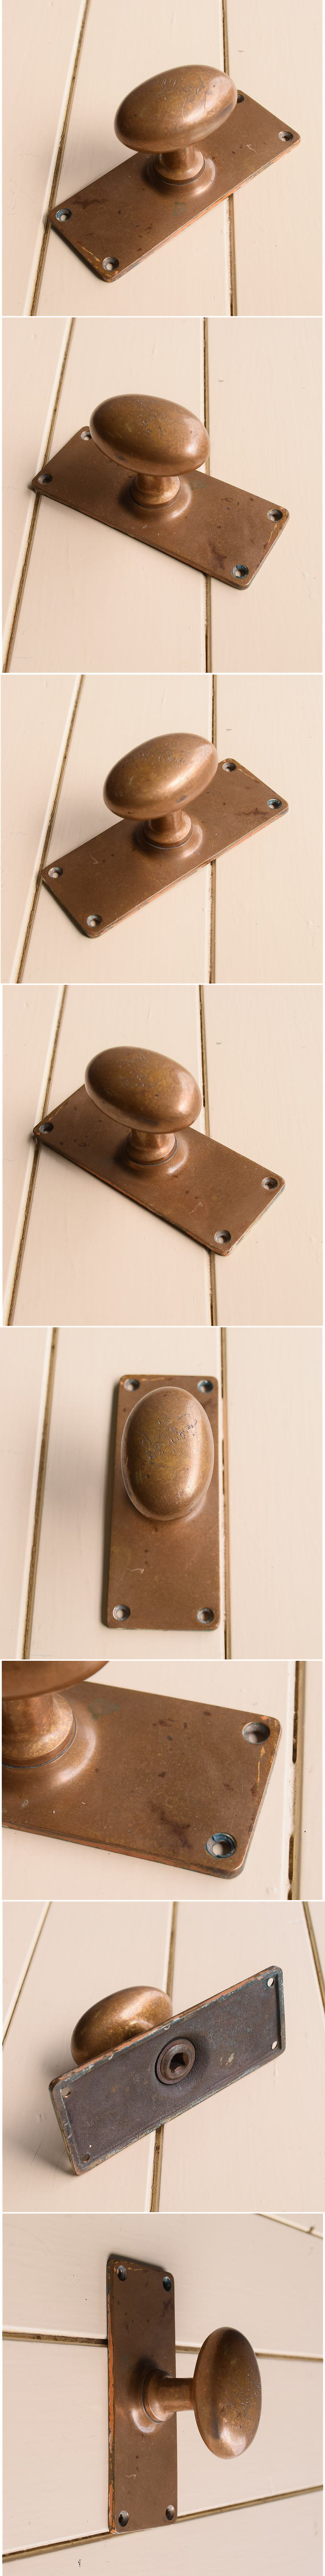 イギリス アンティーク 真鍮製 ドアノブ 建具金物 11153